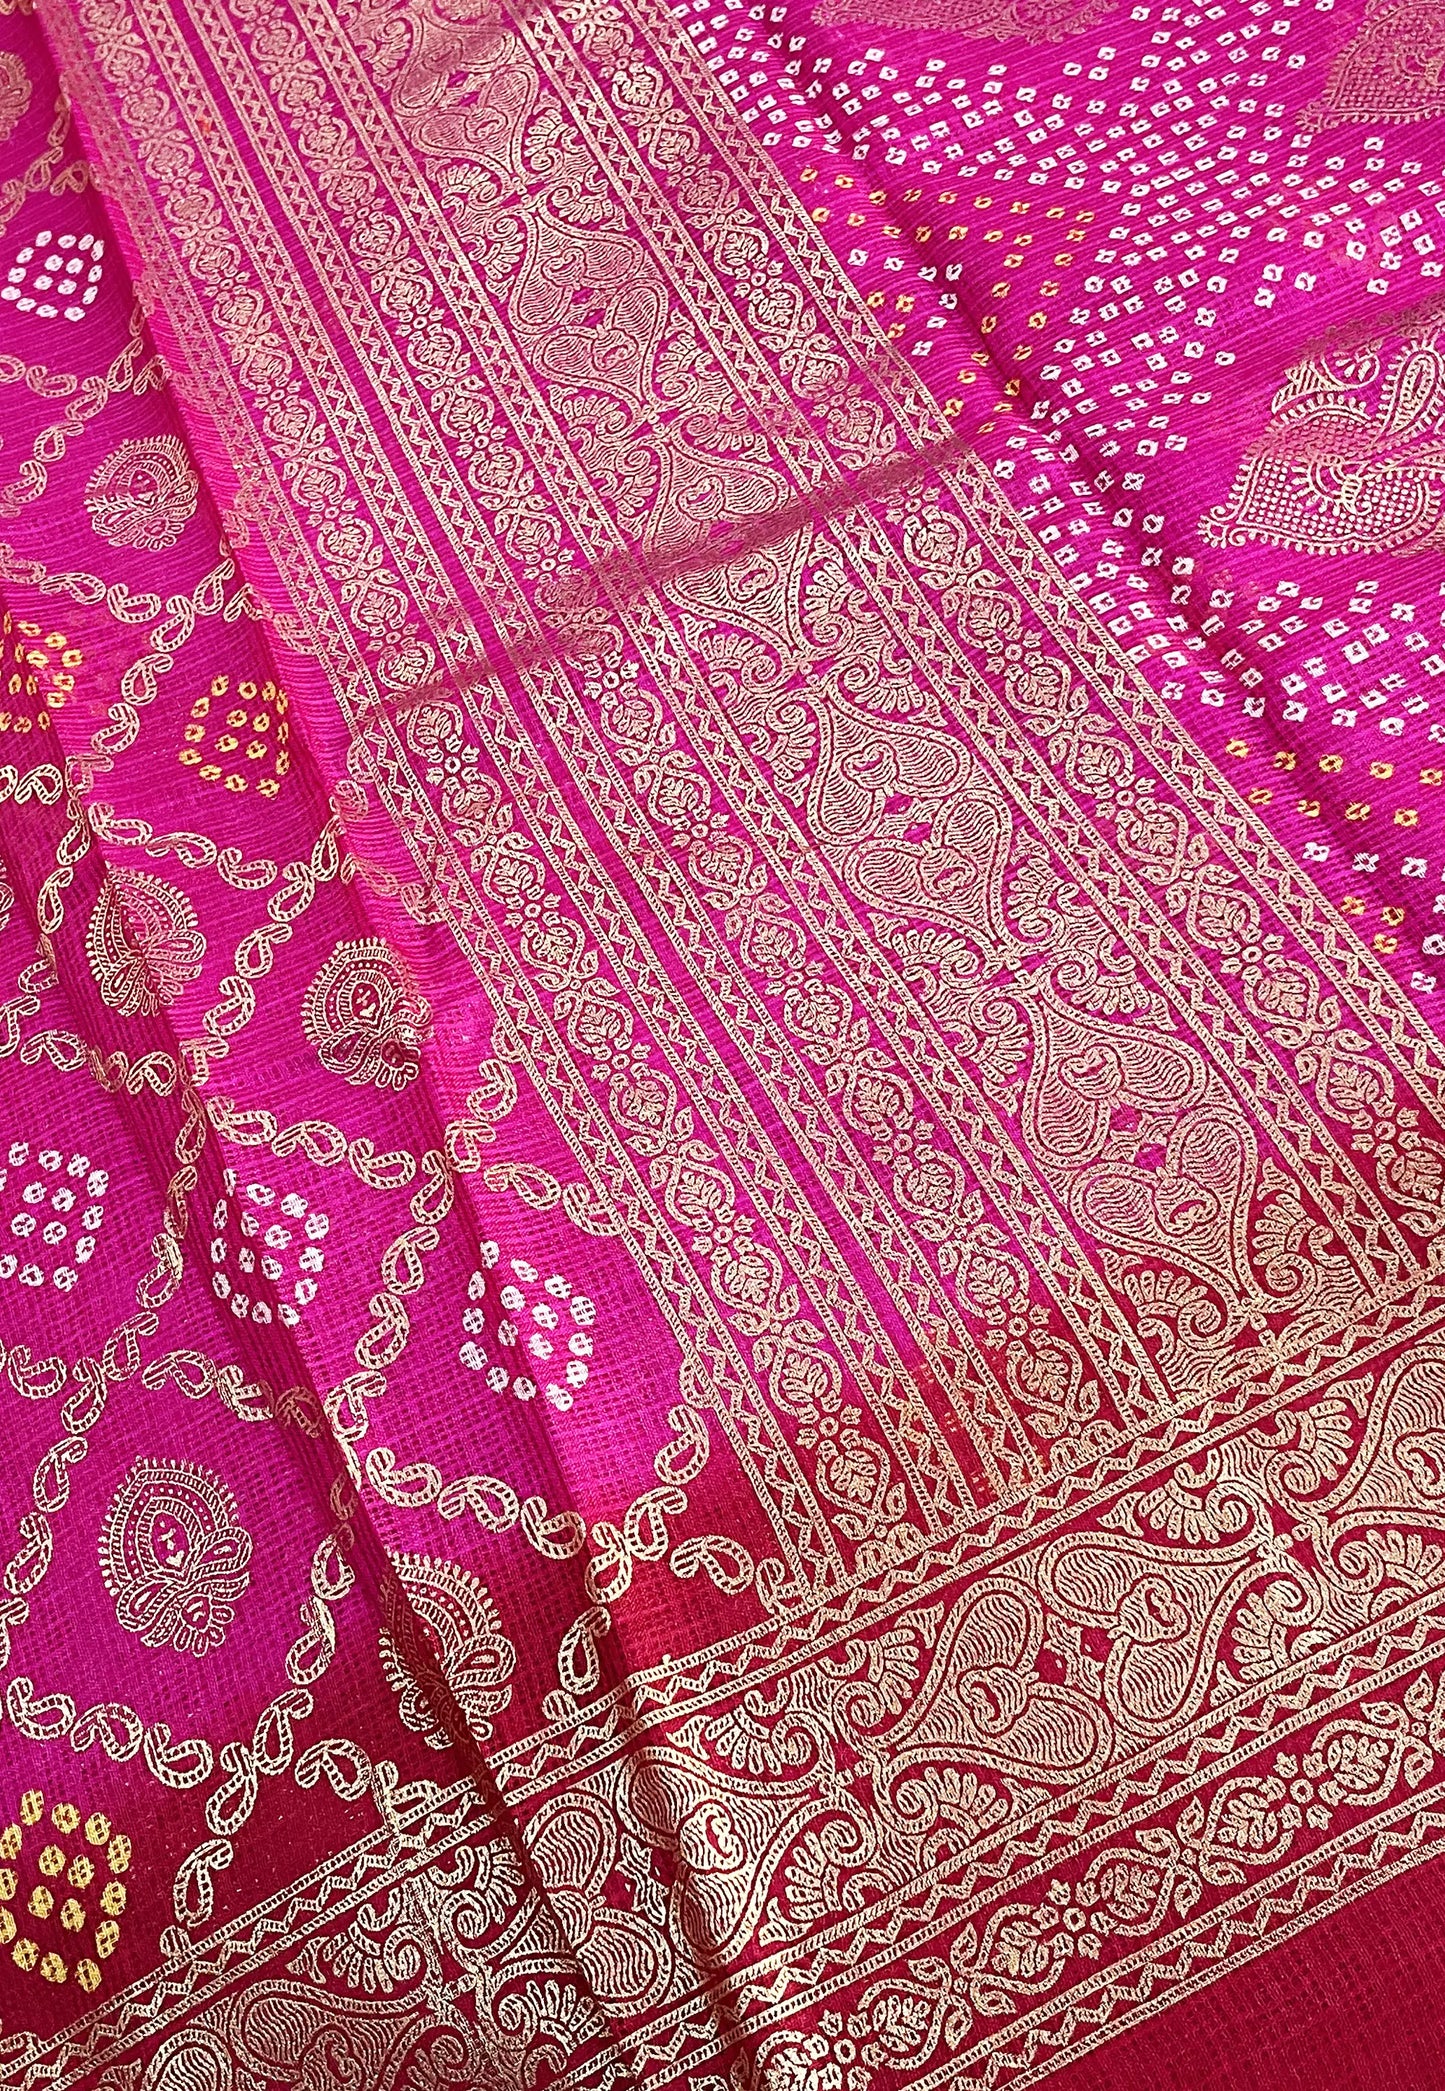 Pink Bandhej Printed Kota Doriya Saree with Running Blouse